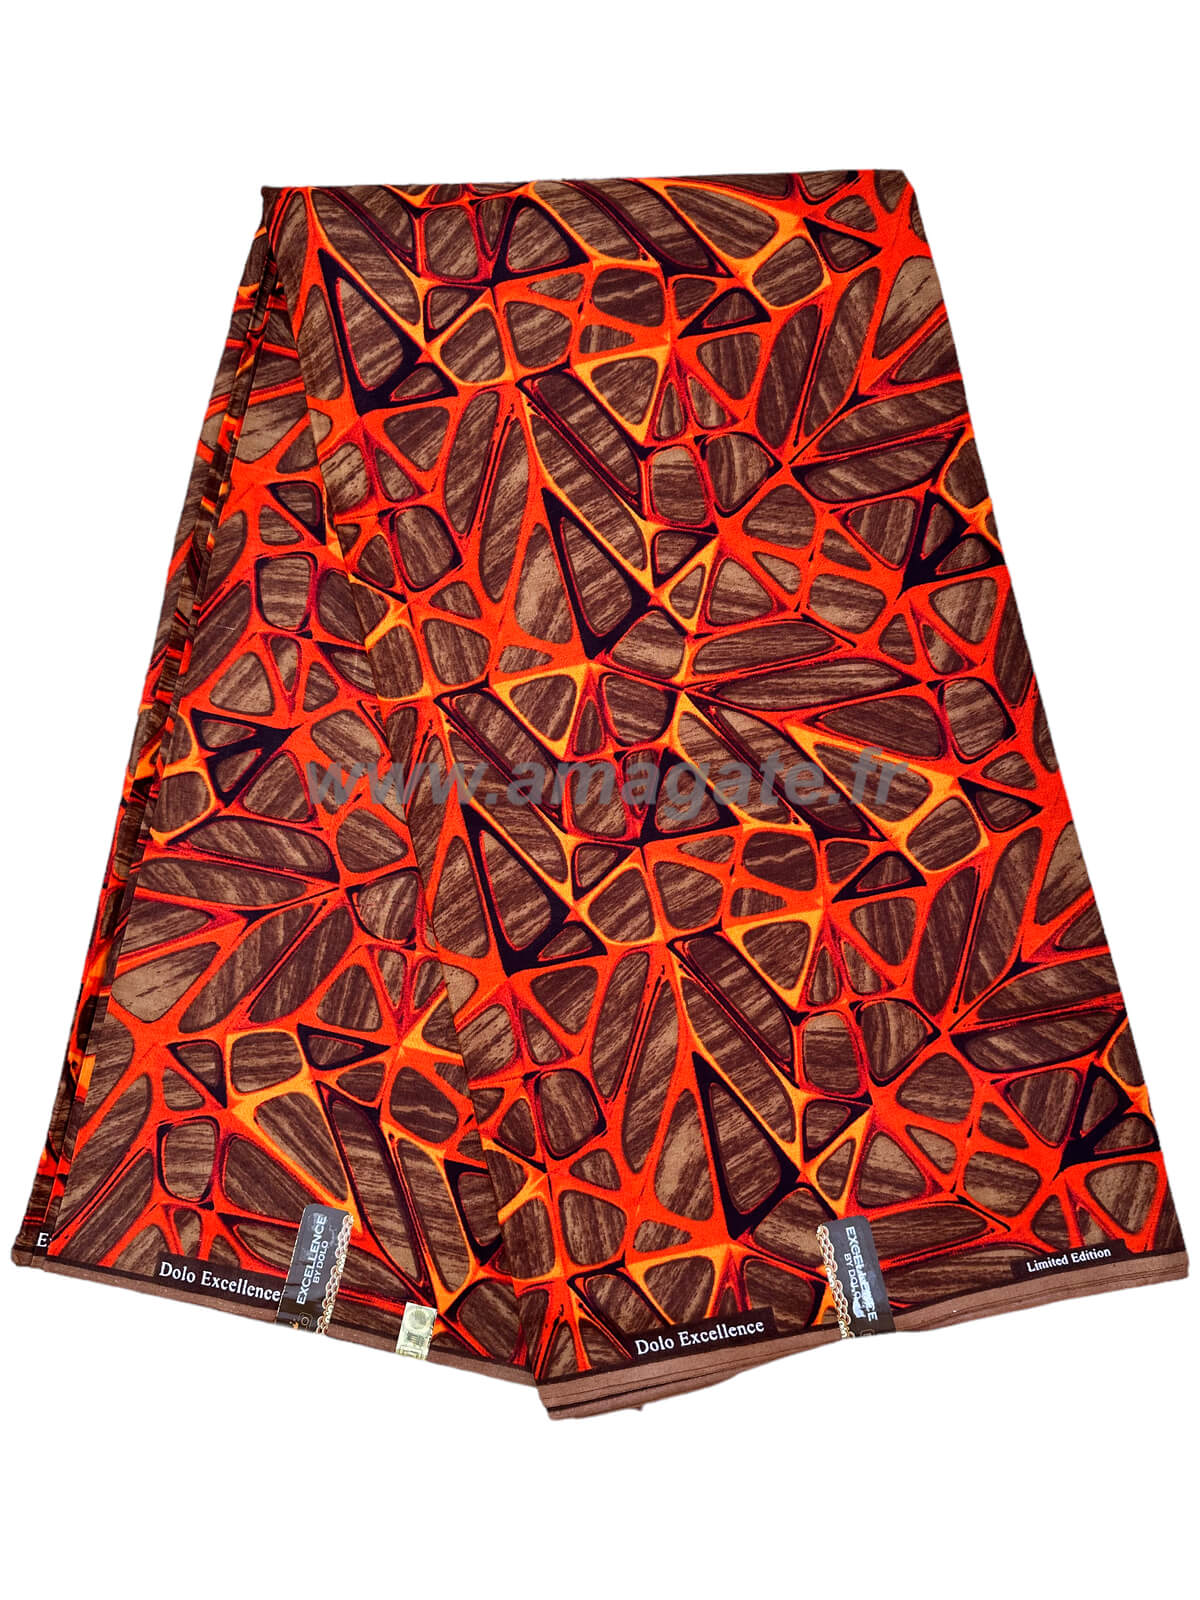 Tissu - Wax 100% coton - Mont Korhogo - Rouge / Orange / Bois